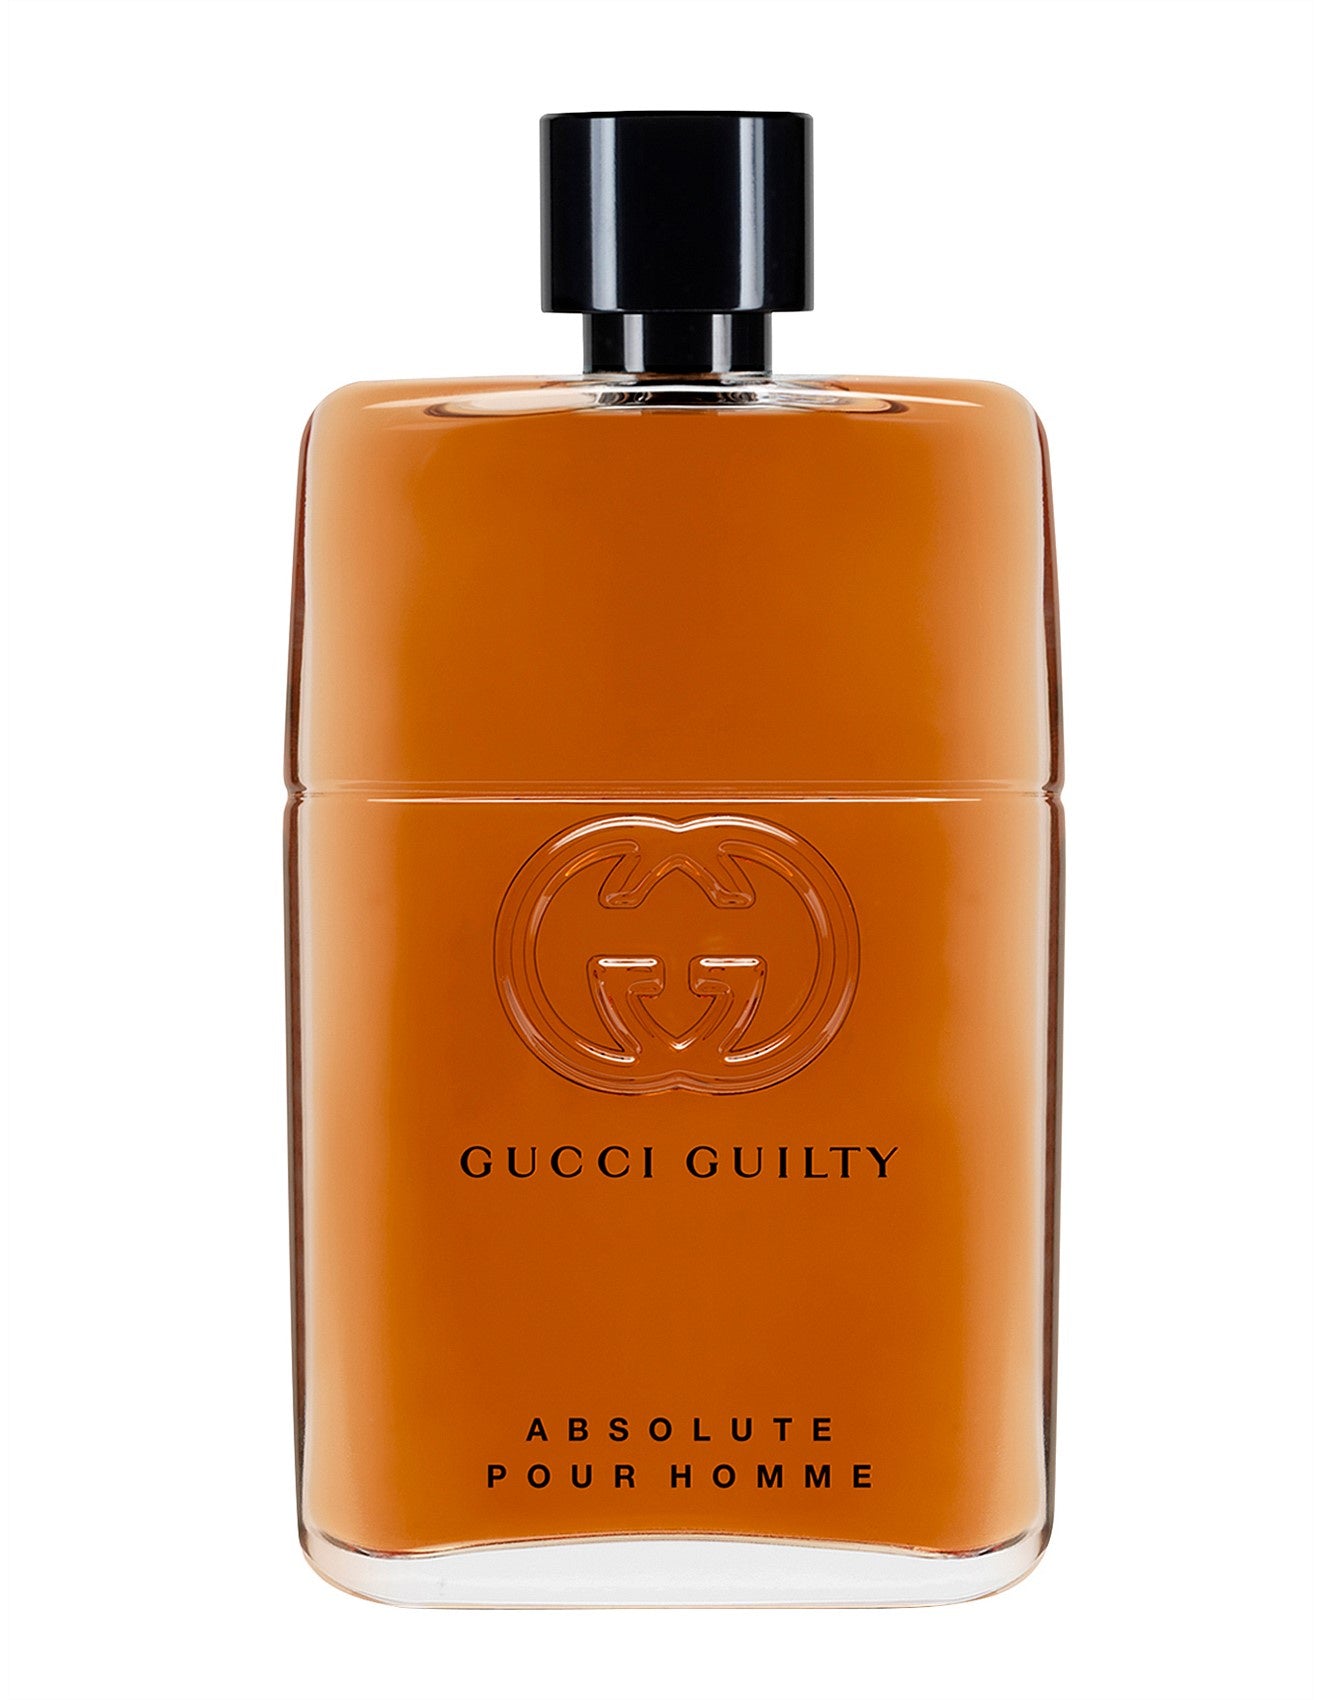 Gucci Guilty Pour Homme Absolute Eau de Parfum